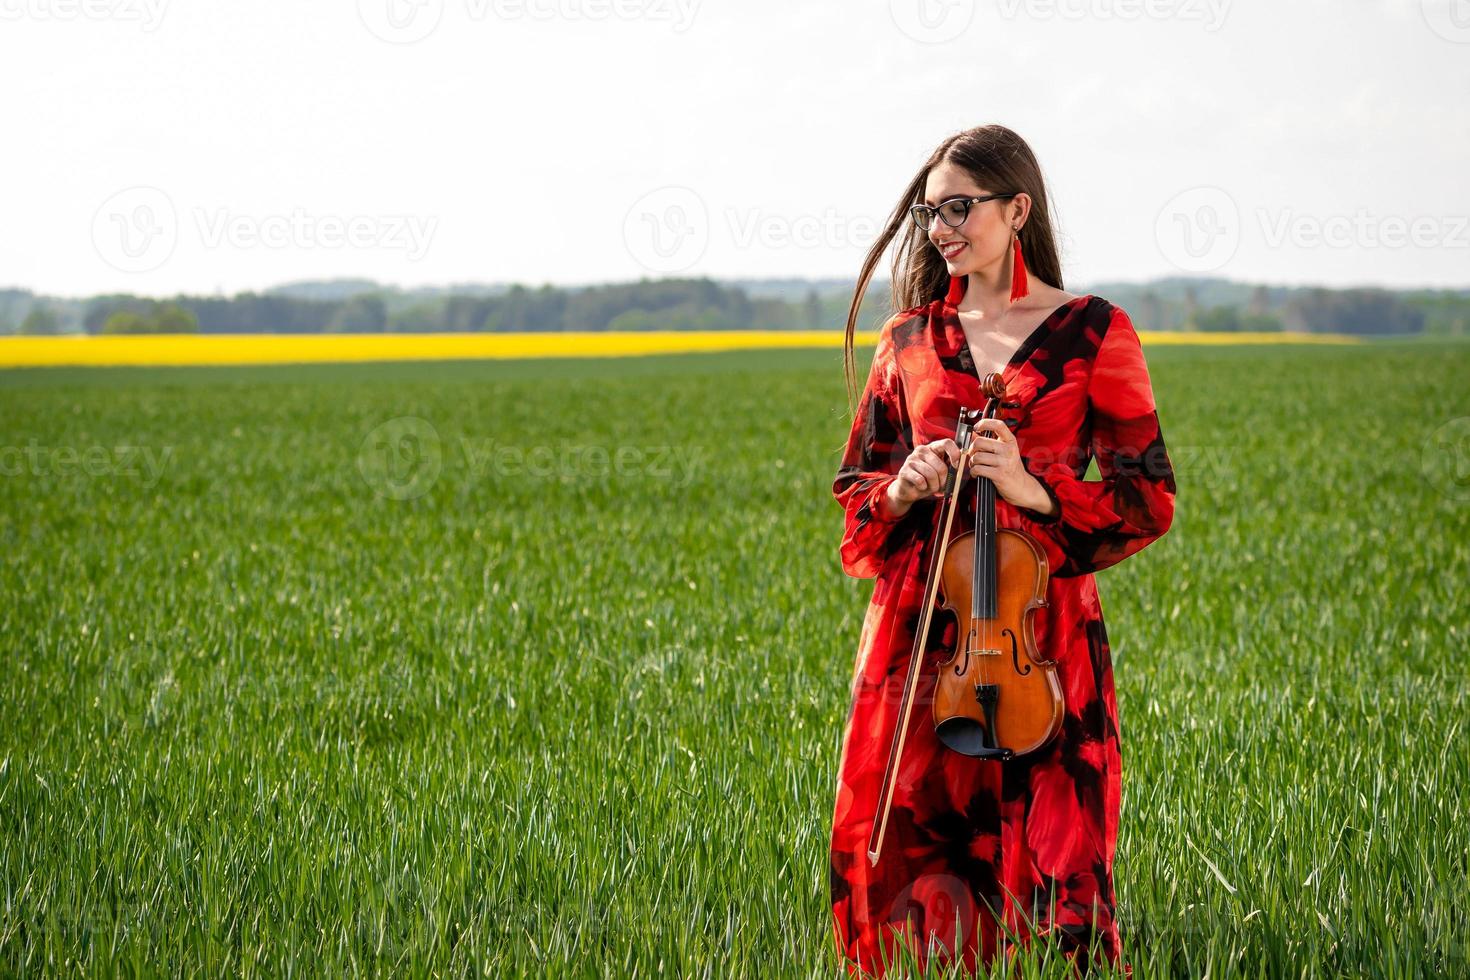 jovem com um vestido vermelho tocando violino em um prado verde - imagem foto